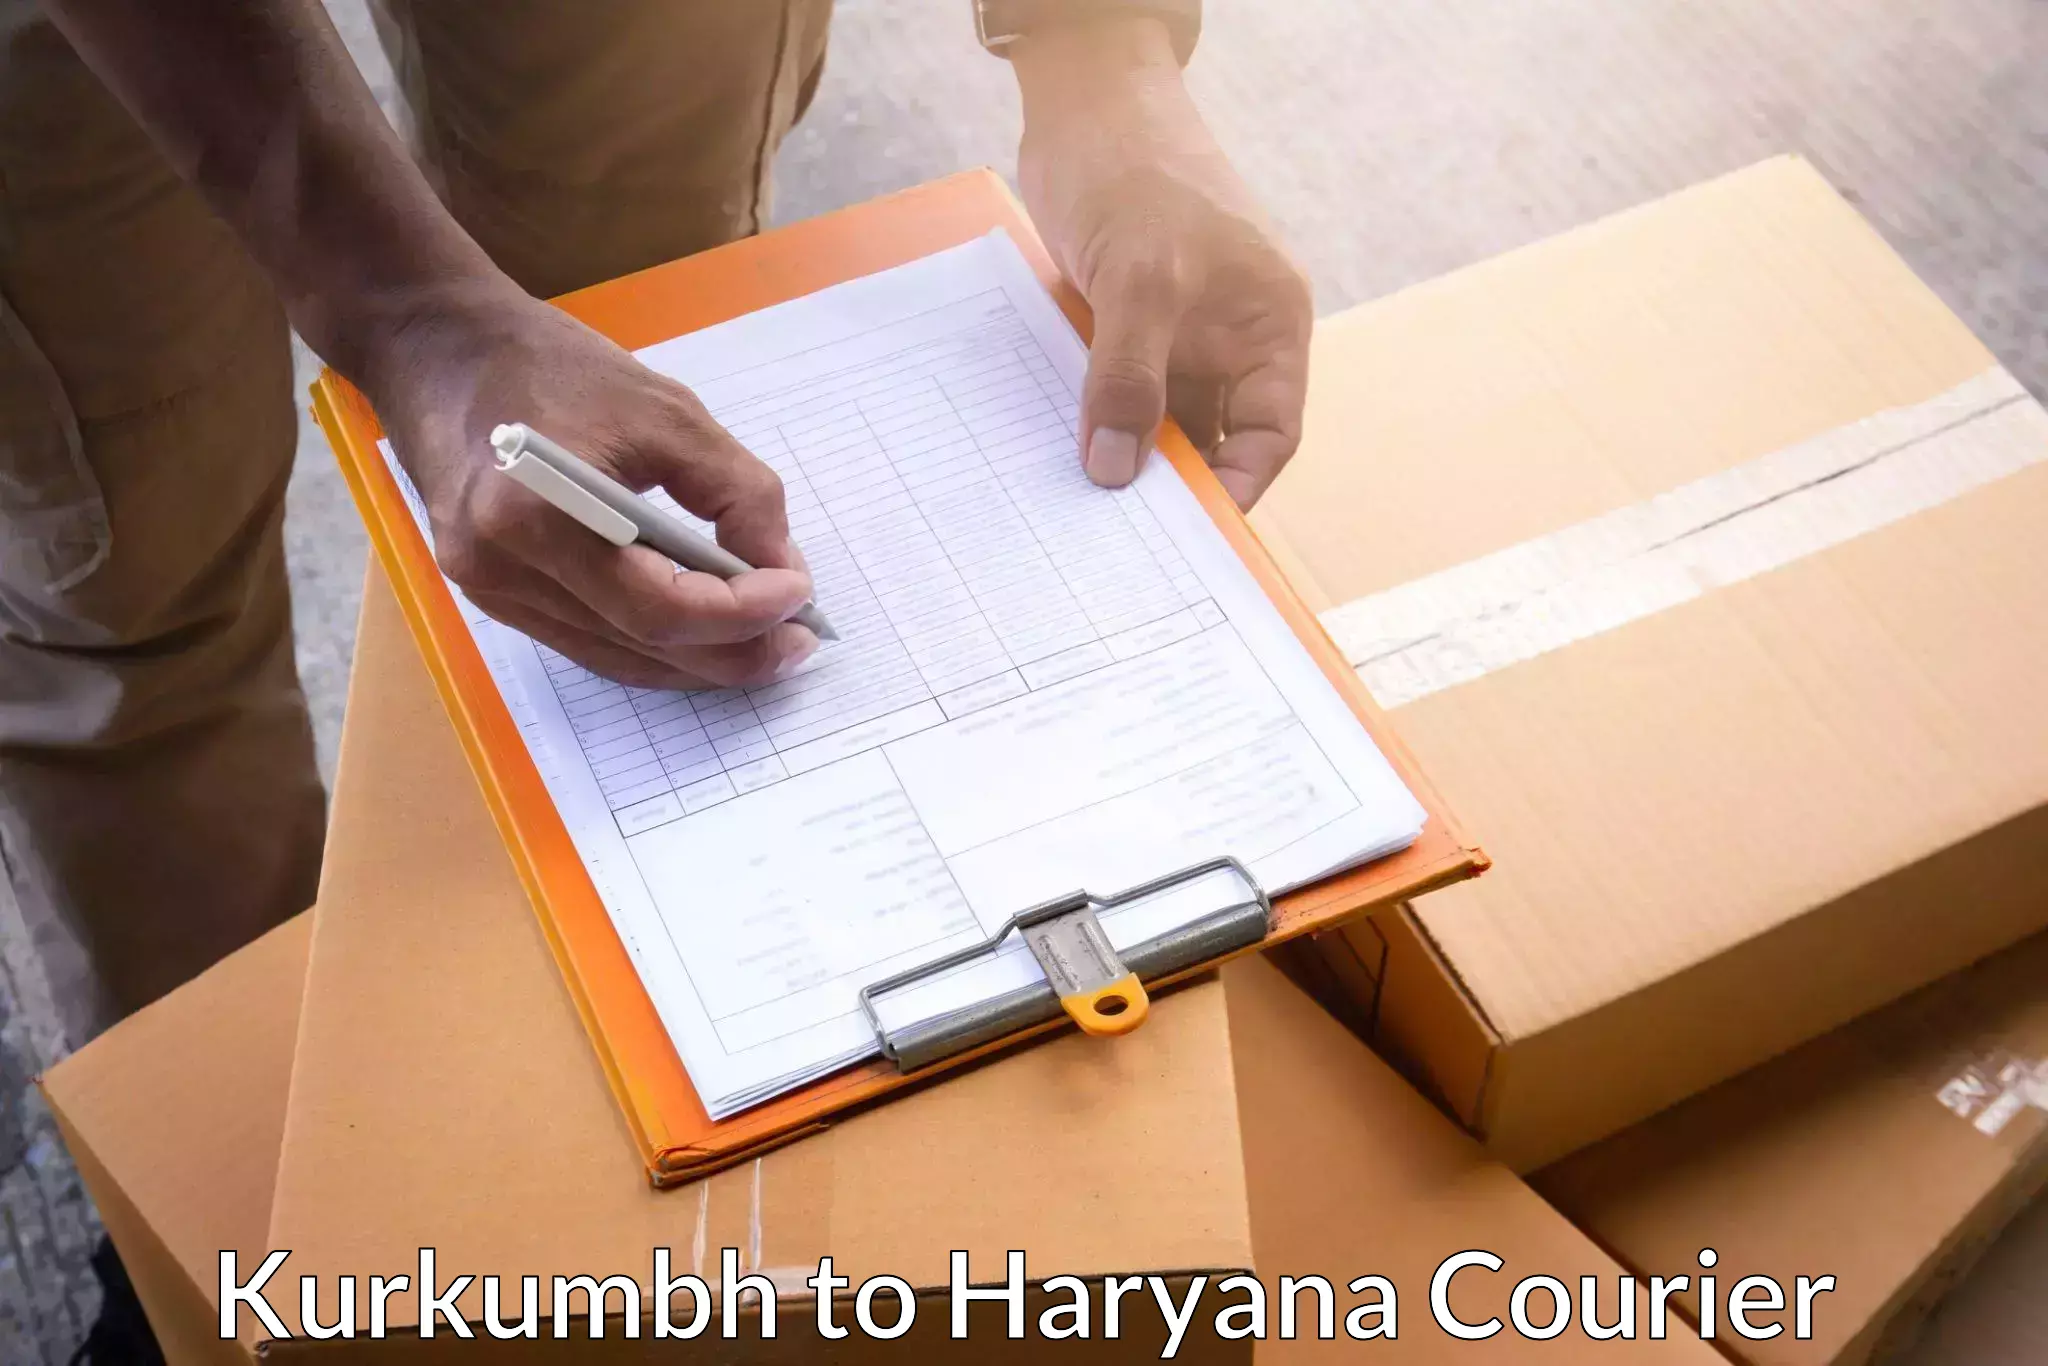 On-demand shipping options Kurkumbh to Kurukshetra